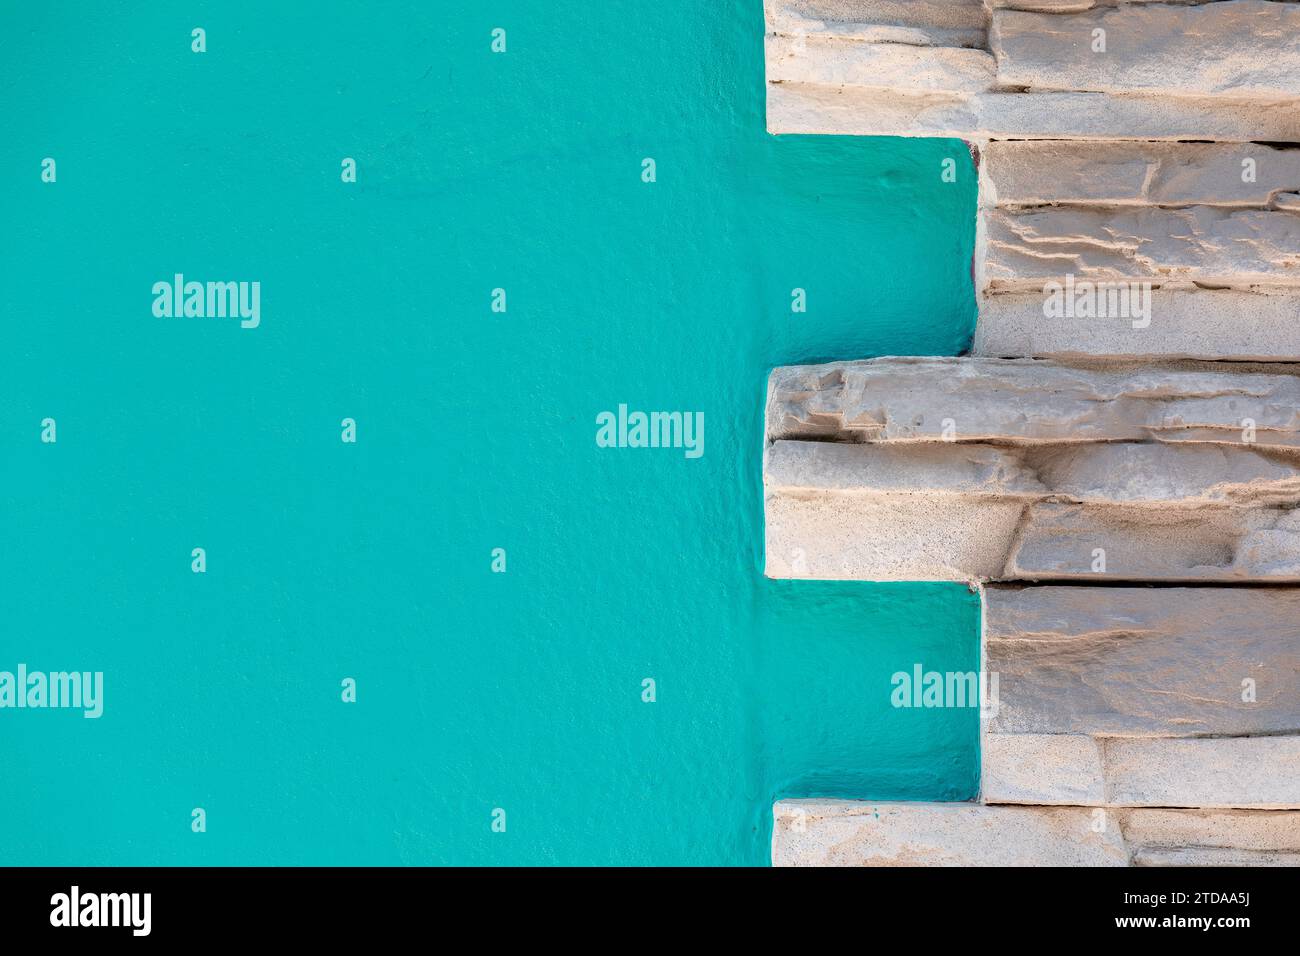 Texture de fond de mur peint turquoise : surface vibrante et moderne pour diaporamas et présentations Banque D'Images